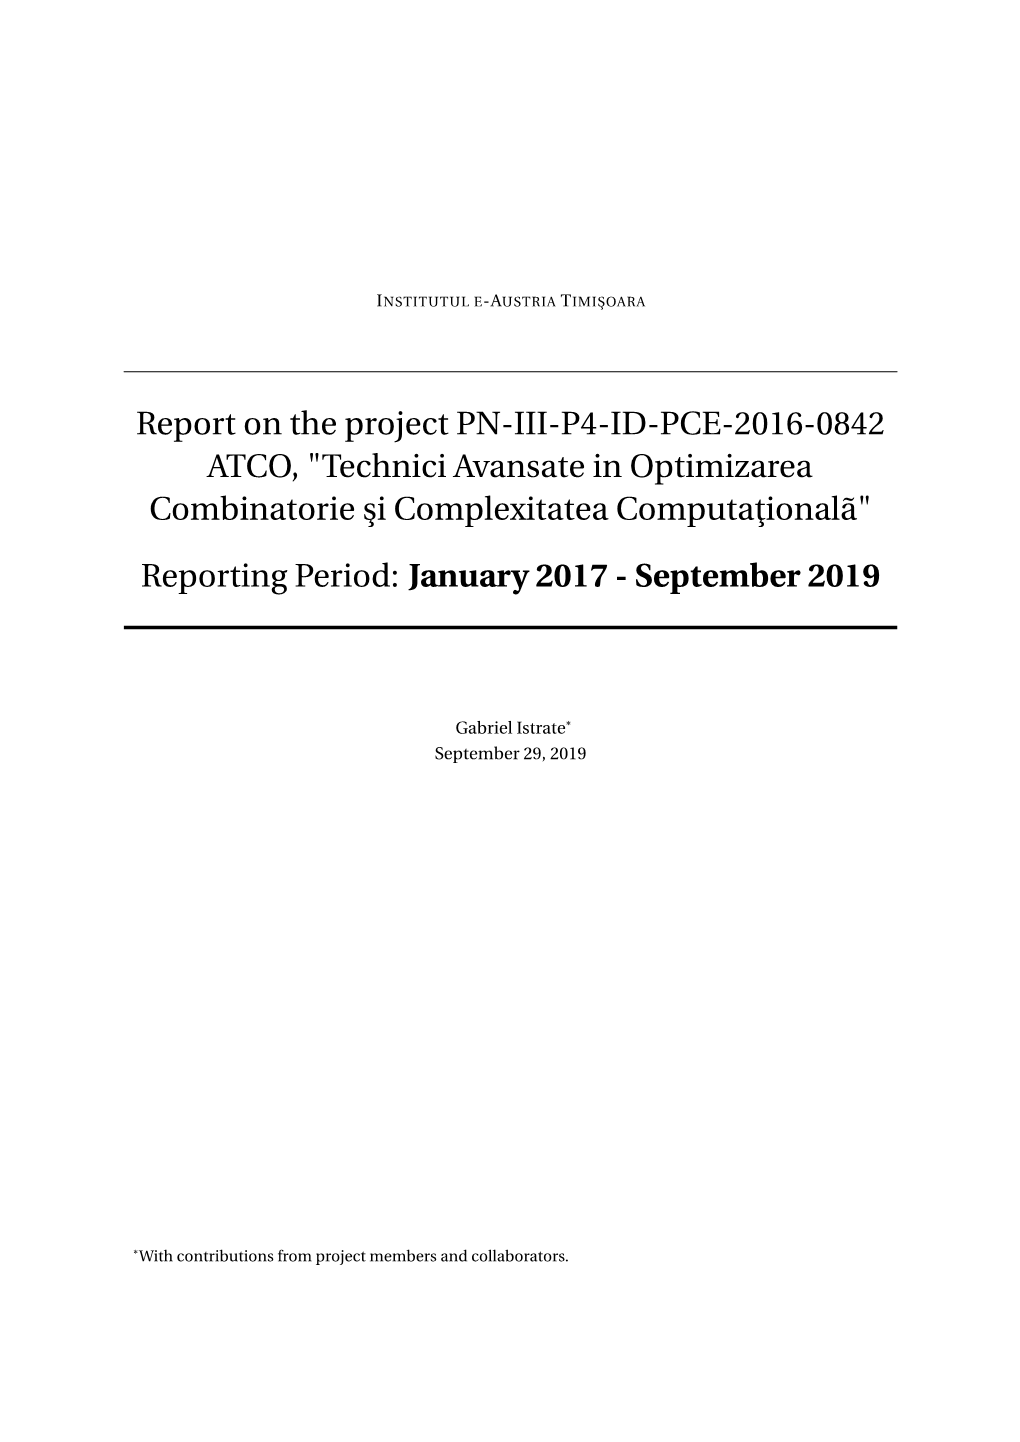 Report on the Project PN-III-P4-ID-PCE-2016-0842 ATCO, "Technici Avansate in Optimizarea Combinatorie ¸Sicomplexitatea Computa¸Tionalã"